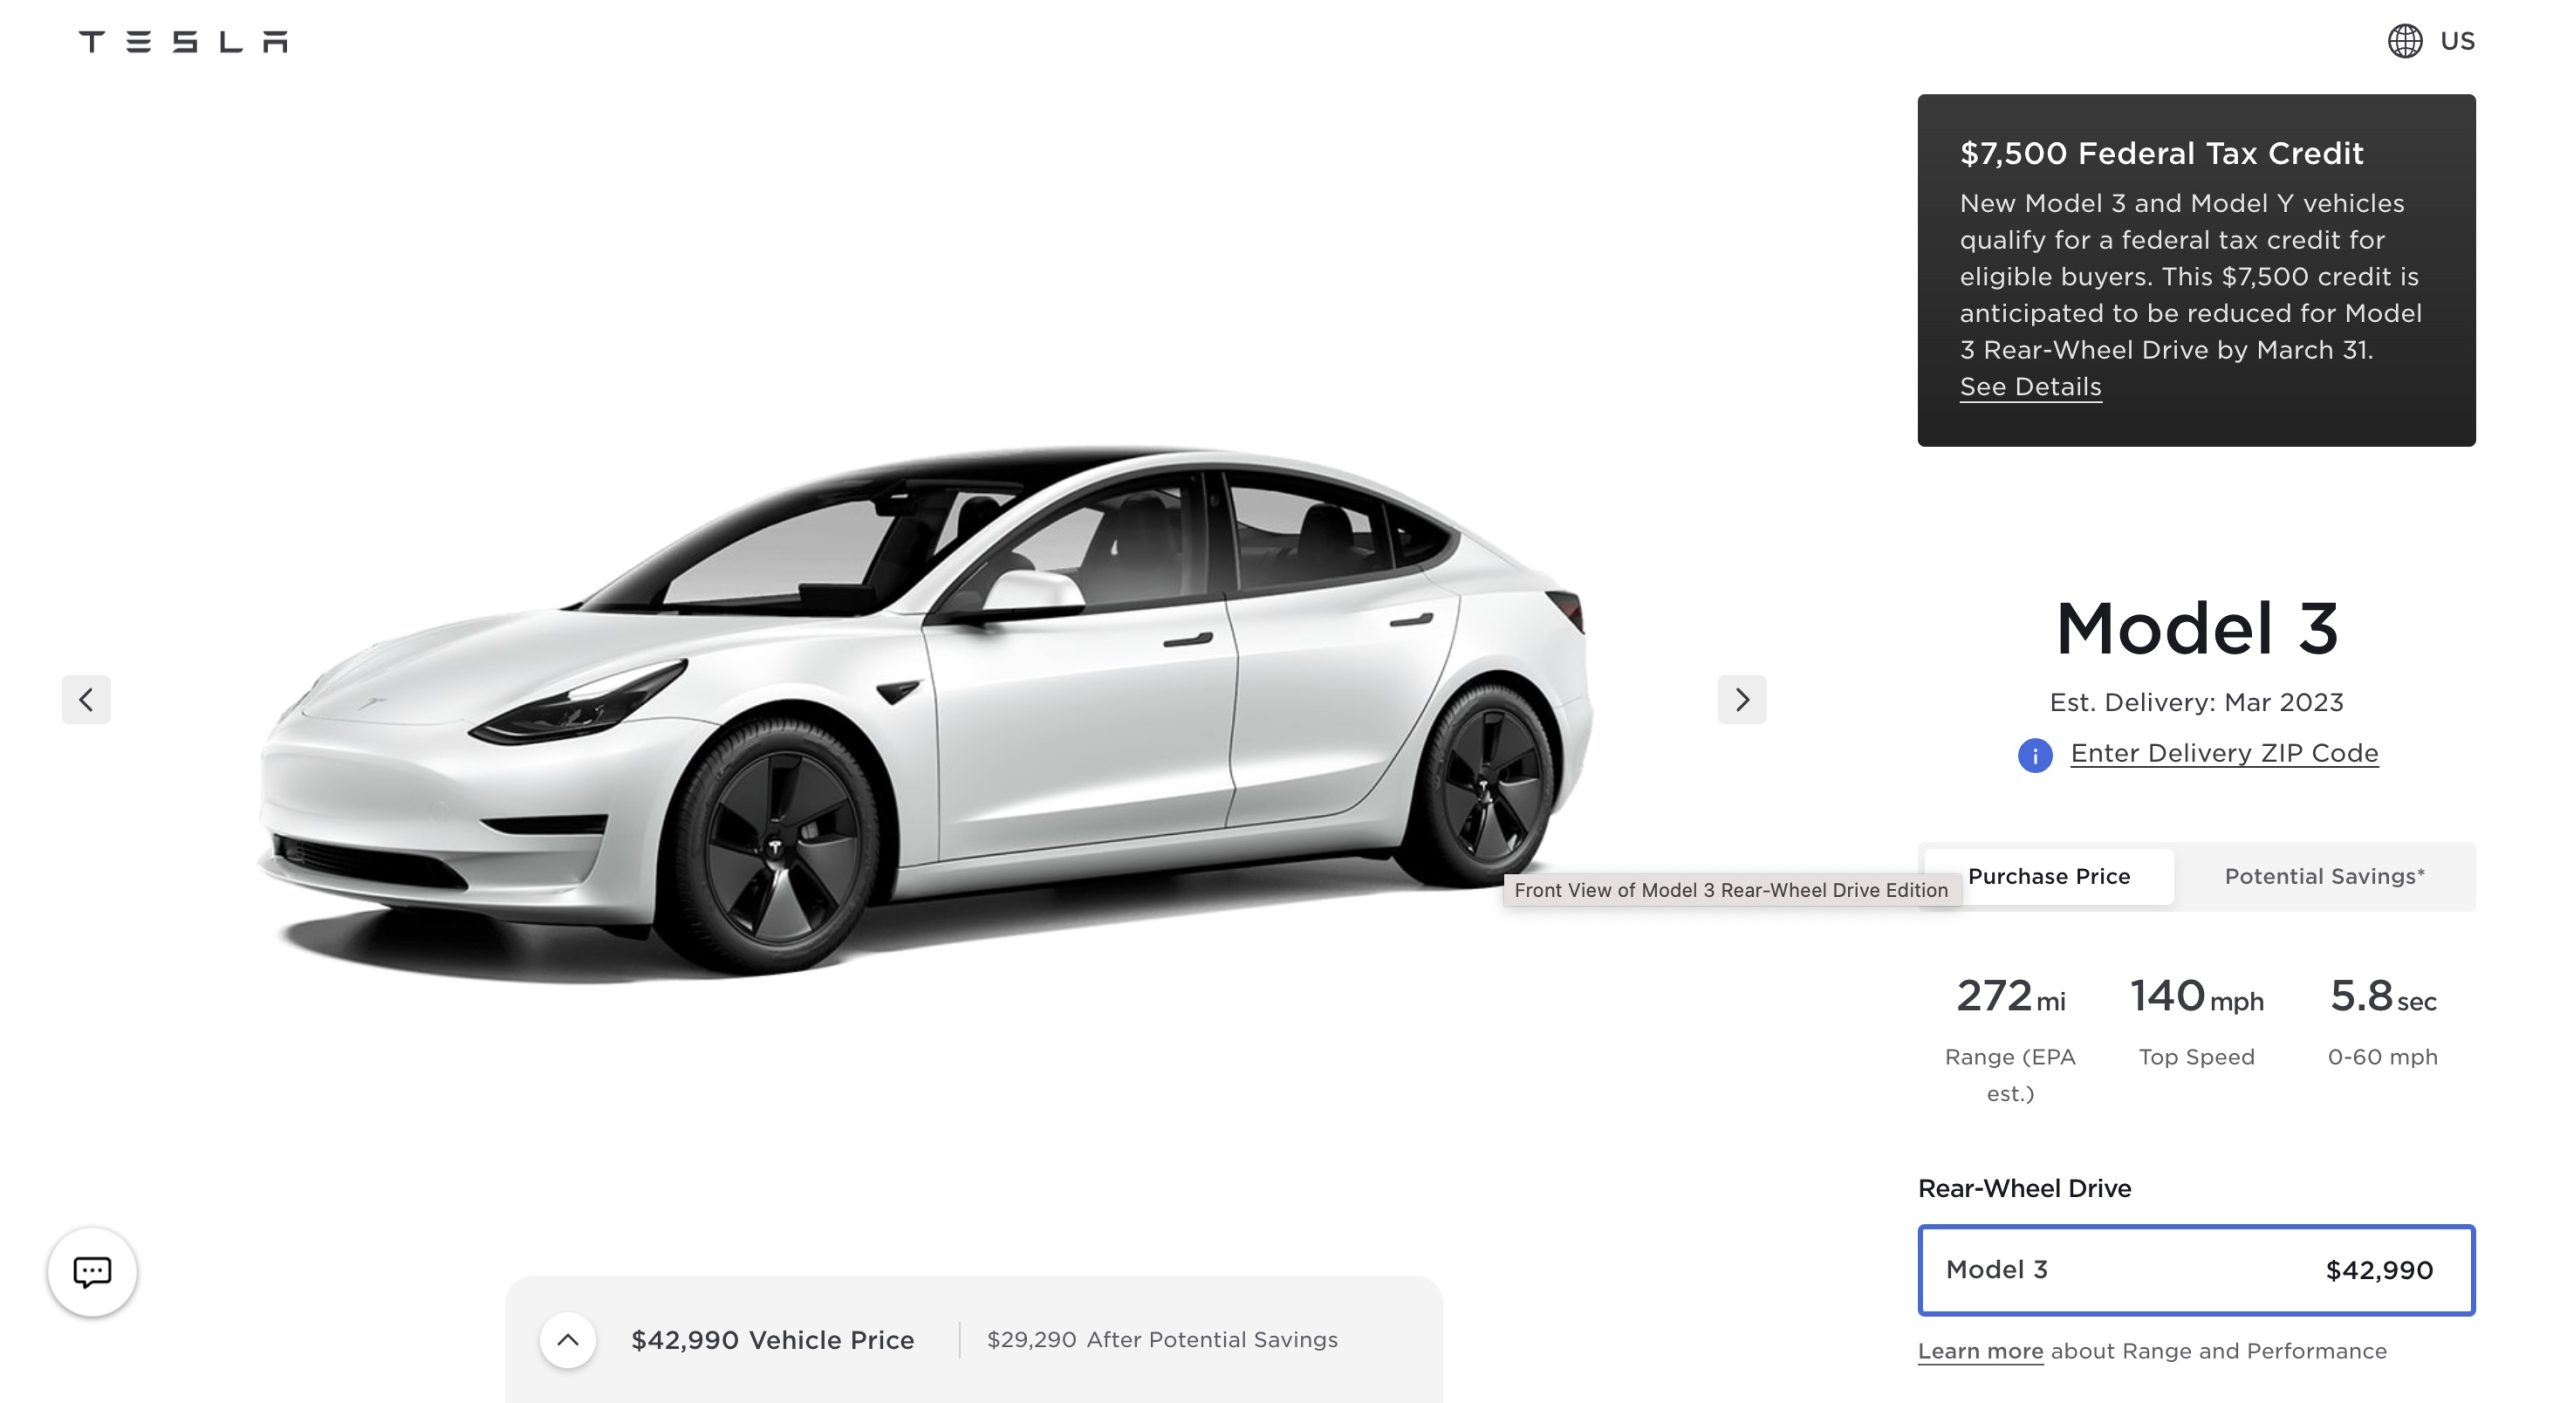 Tesla Model 3 RWD’s $7500 EV Tax Credits will be reduced